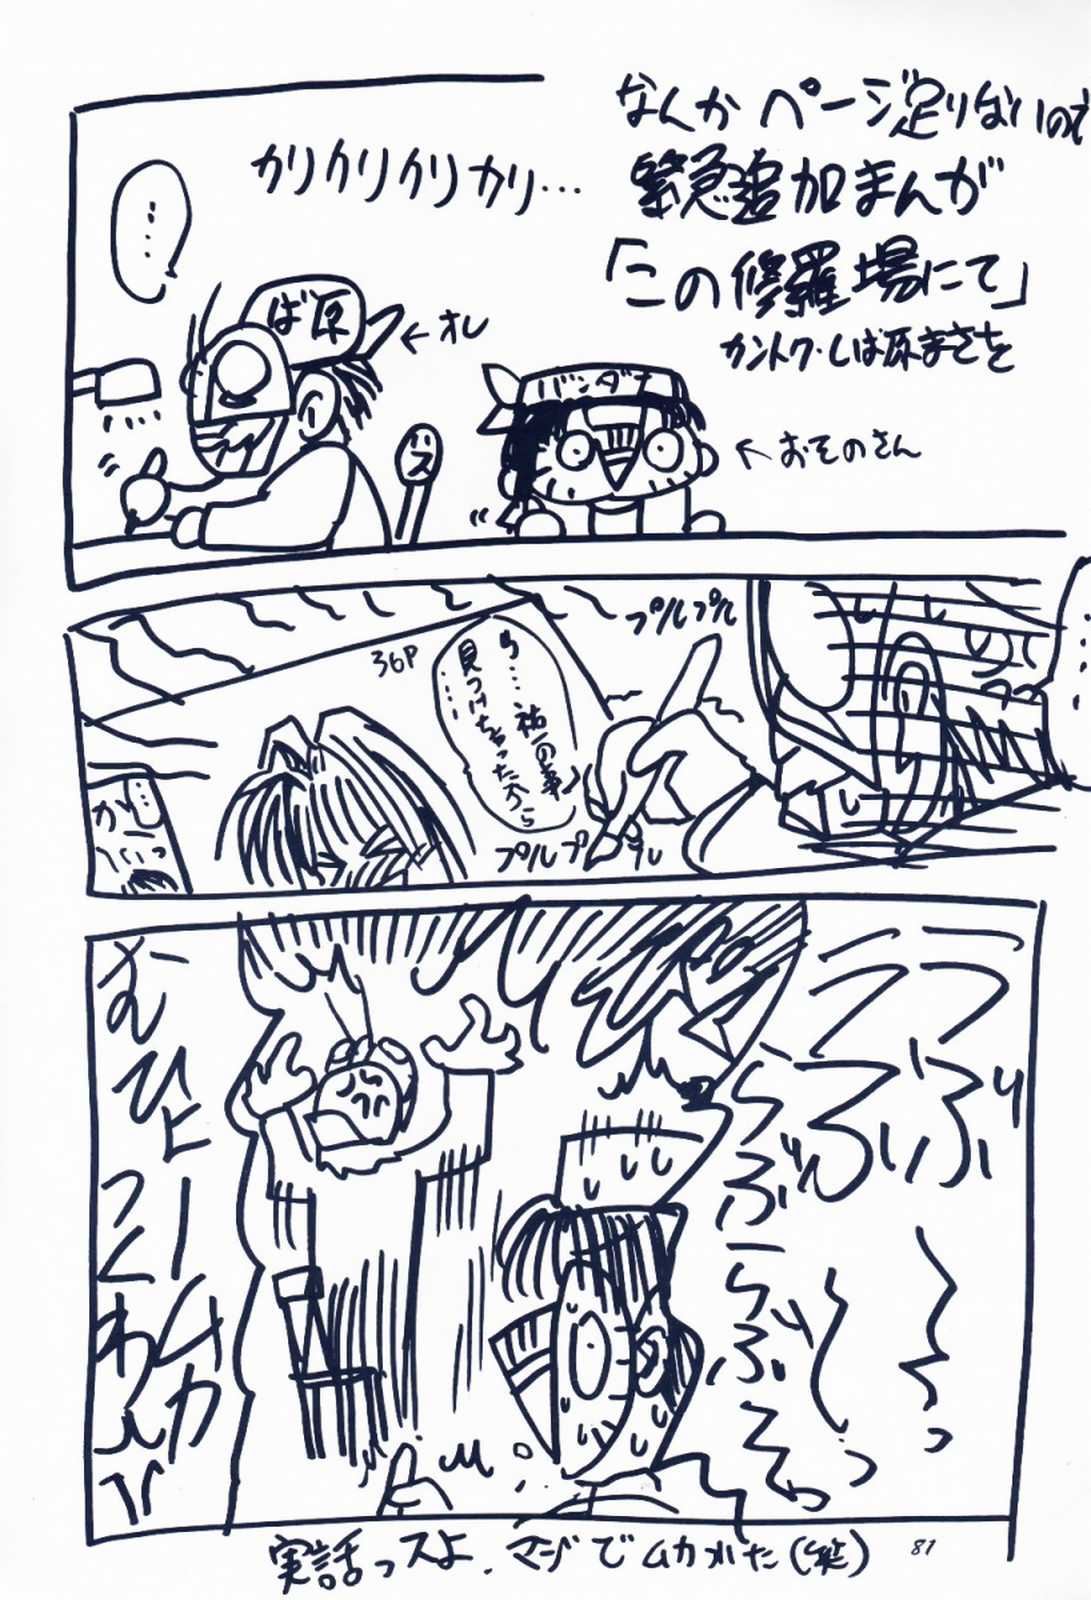 [Sibakarigumi (Shibahara Masao)] Maido Osawagaseshimasu 7 (Comic Party, Kanon) [芝刈組 (しば原まさを)] 毎度おさわがせします7 (こみっくパーティー, カノン)